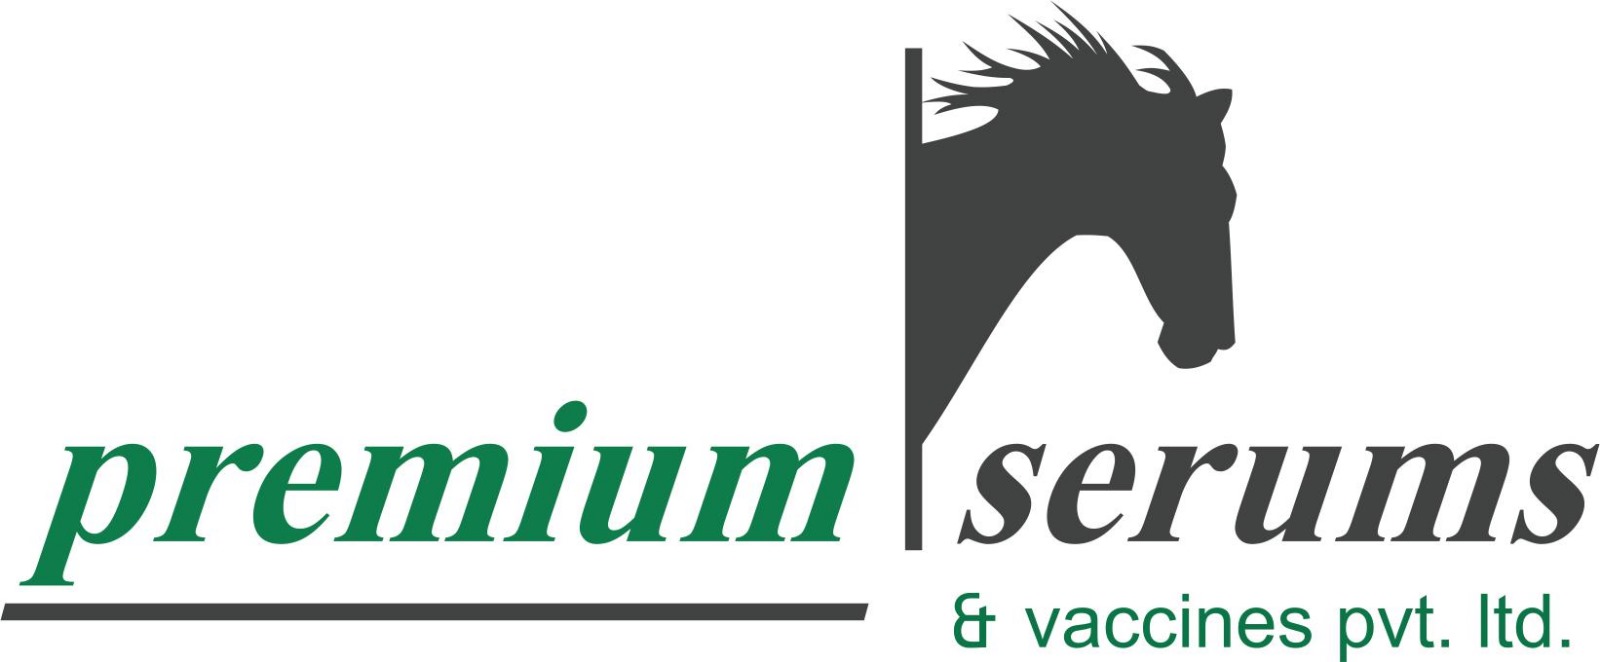 Premium Serum